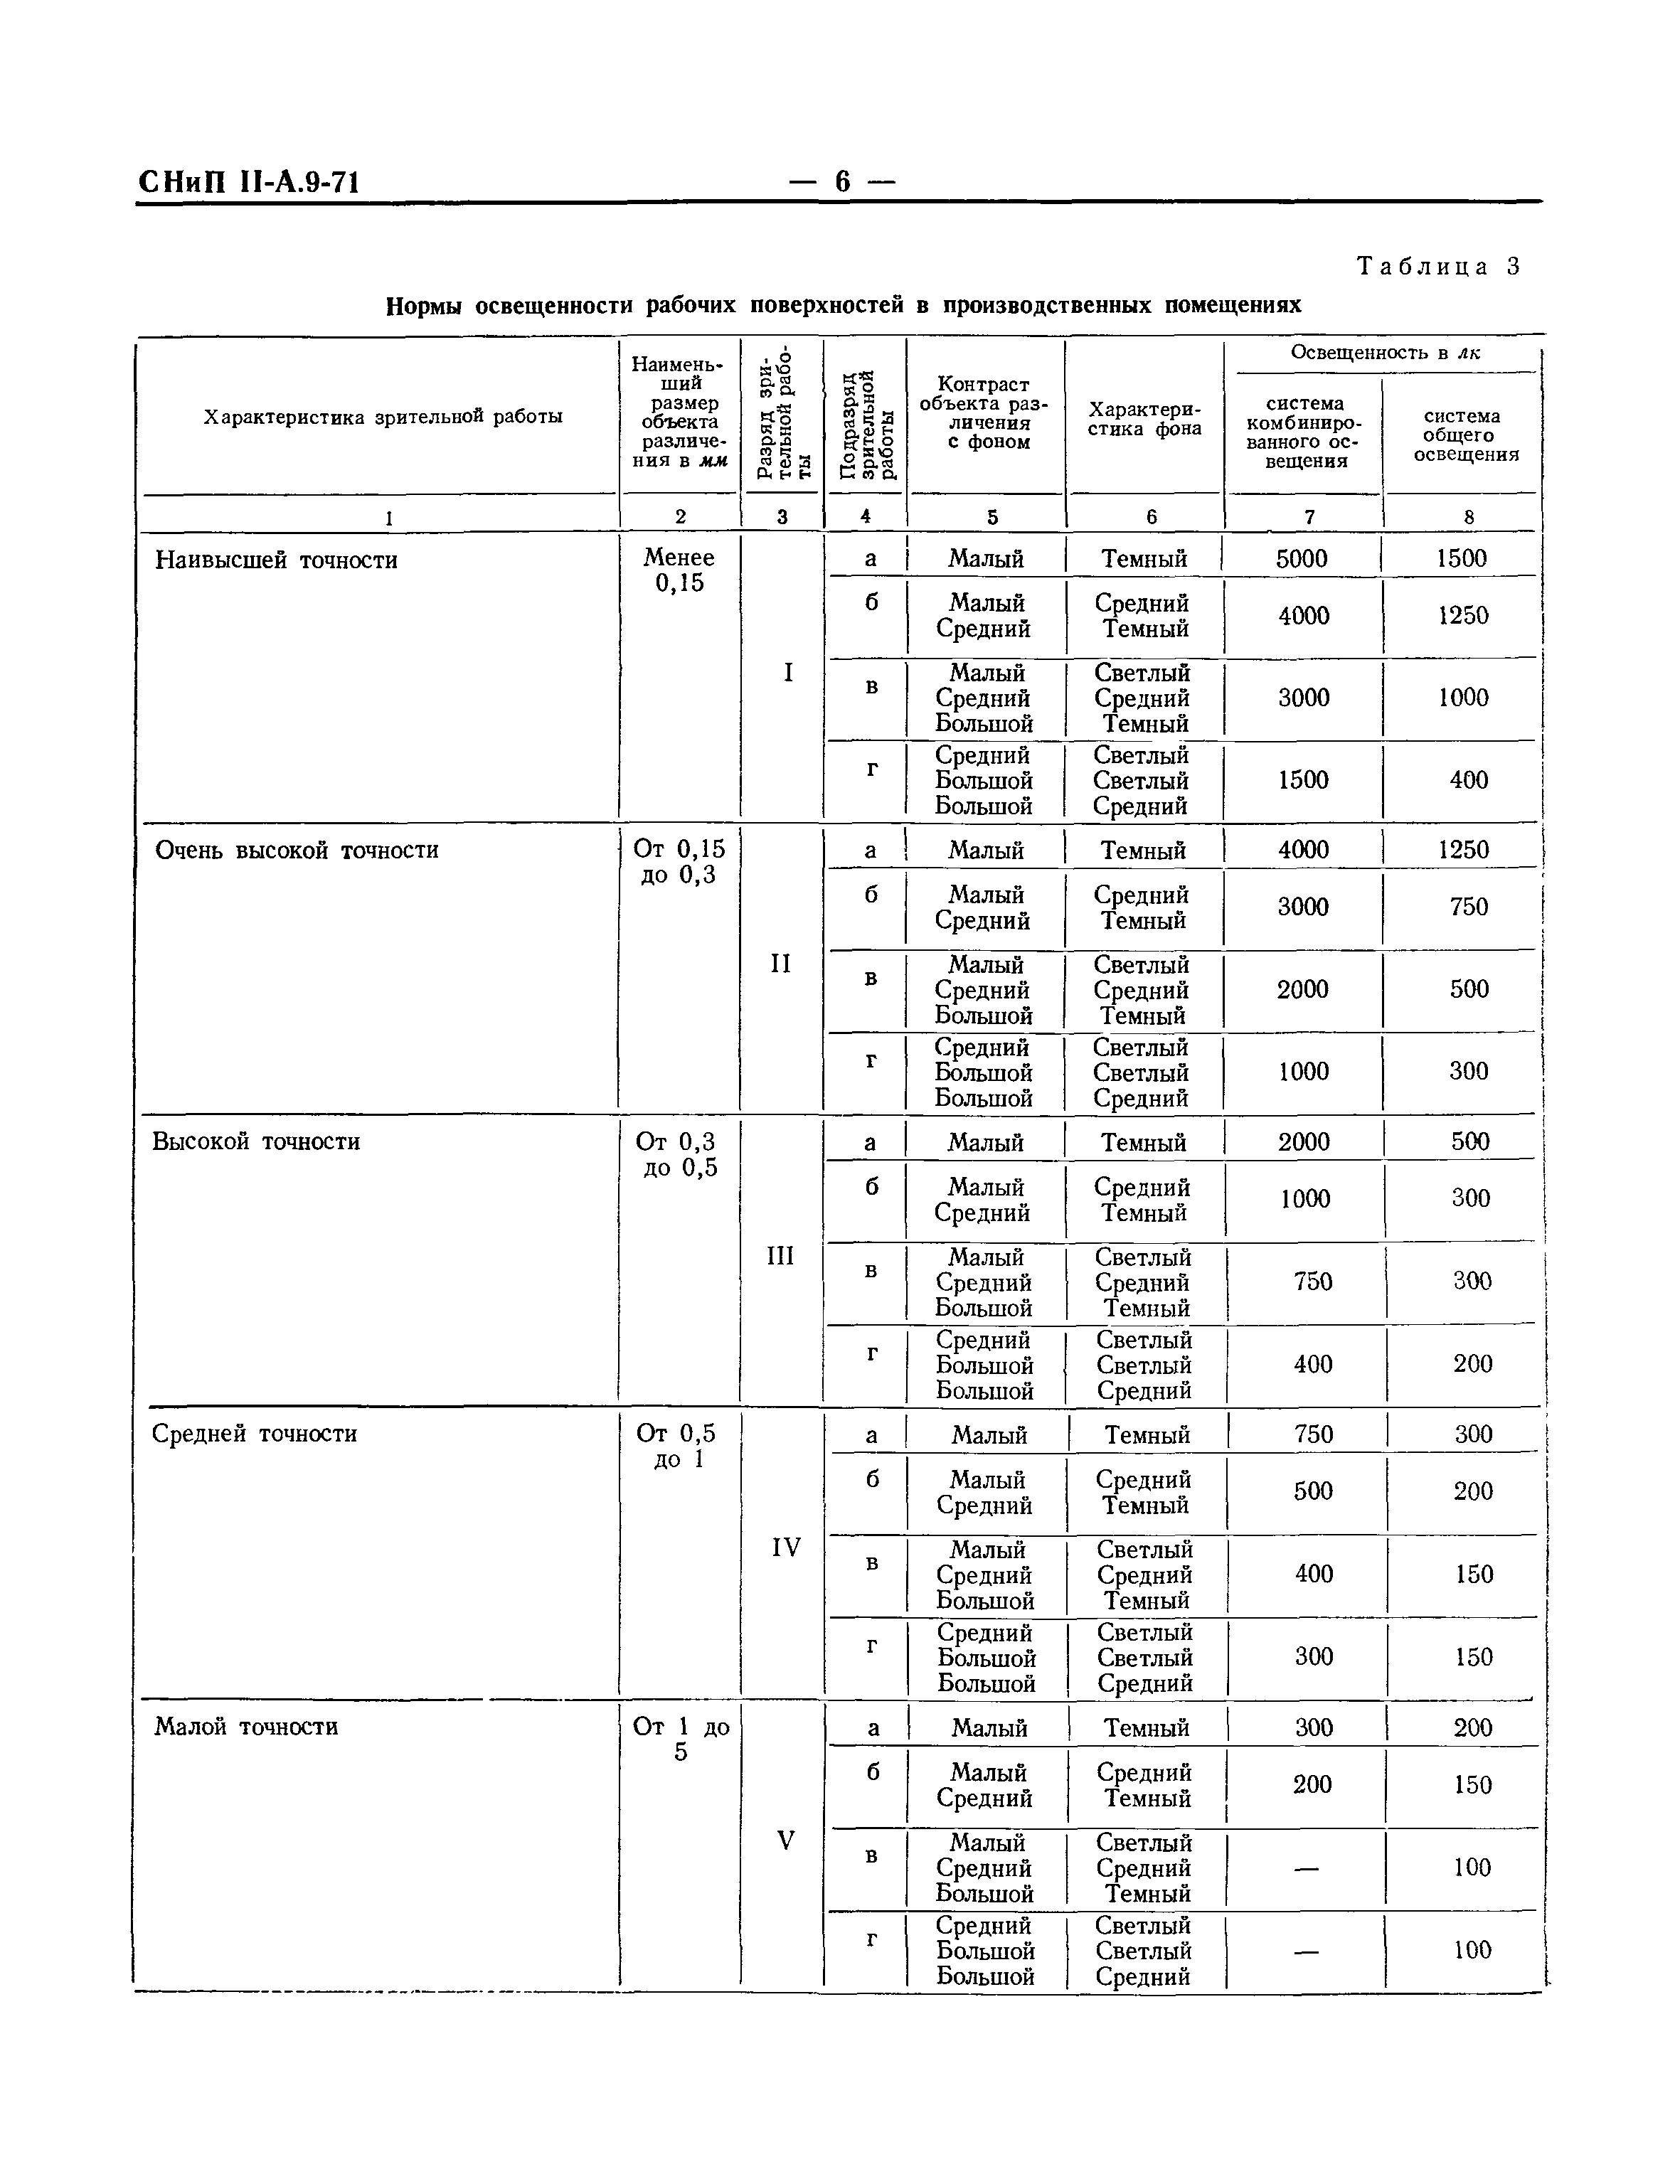 СНиП II-А.9-71